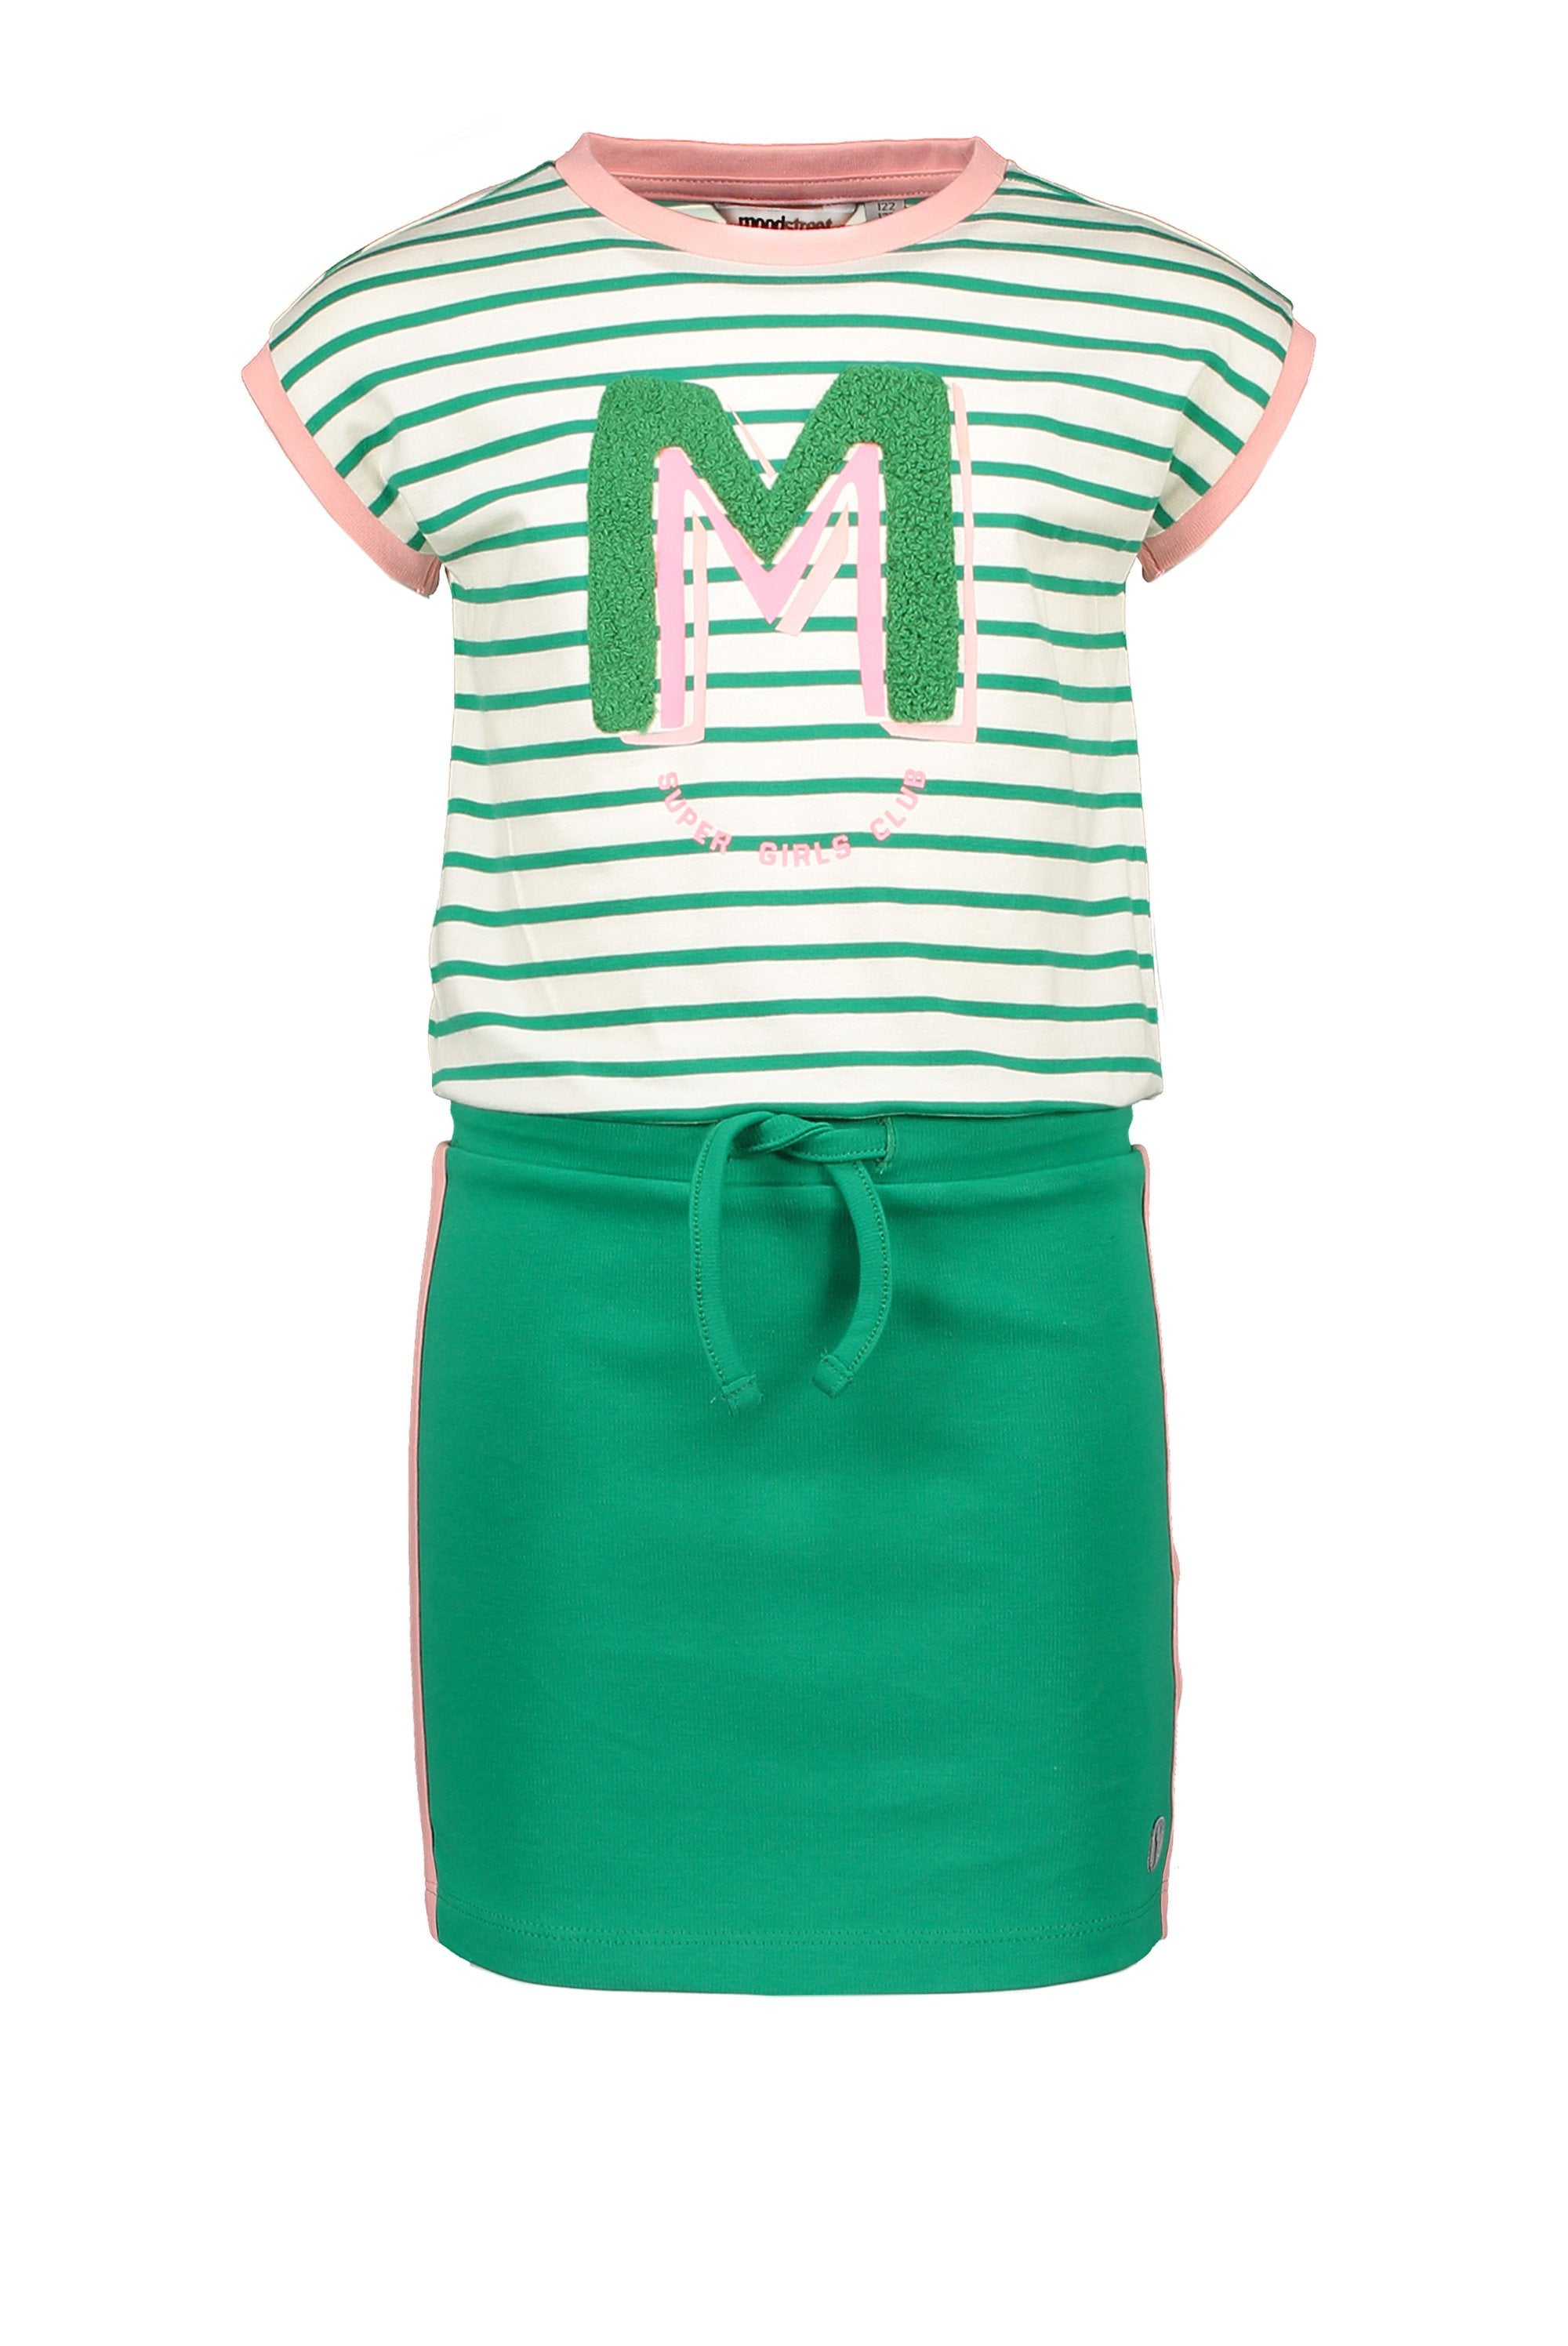 Meisjes Sporty Dress Stripe van Moodstreet in de kleur Green in maat 134/140.